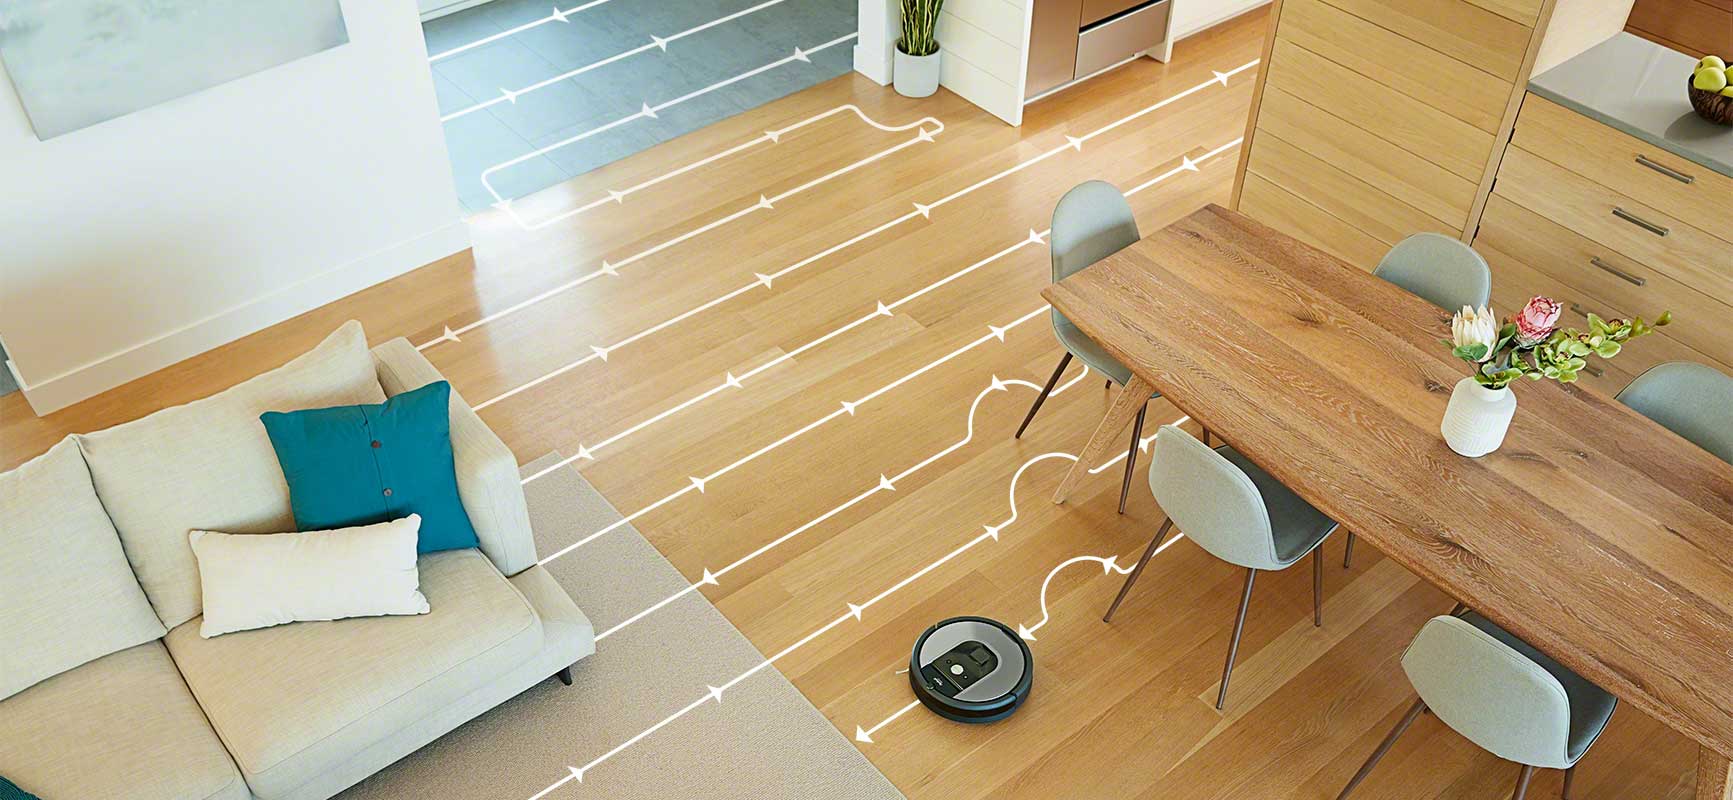 iRobot Roomba serii 900 nawigacja po pomieszczeniach